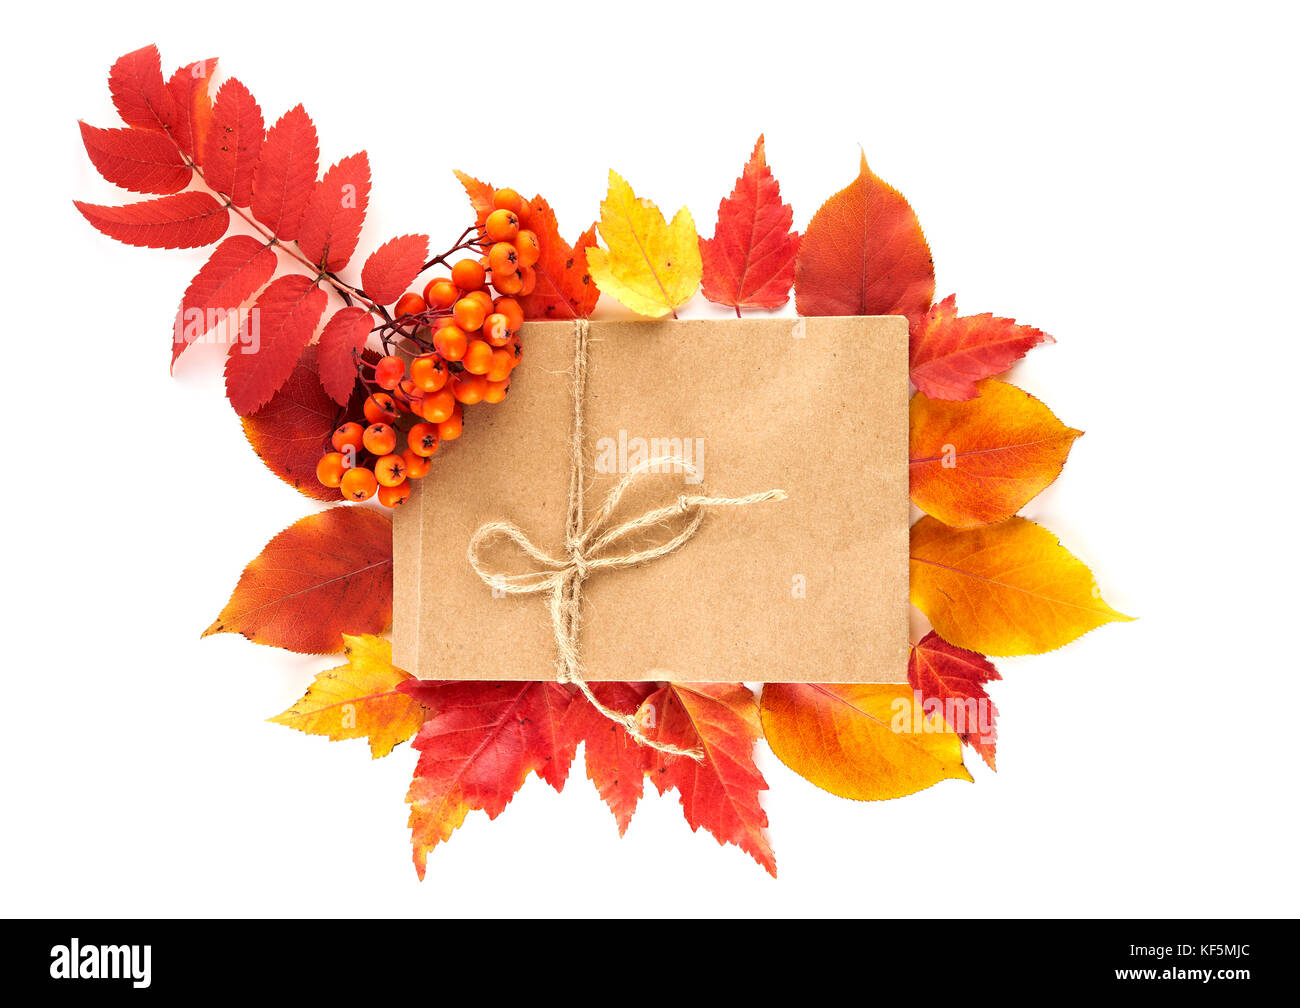 Handwerk Papier Geschenk Umschlag flach auf roten und gelben Blätter im Herbst auf weißem Hintergrund legen. Ansicht von oben. Stockfoto